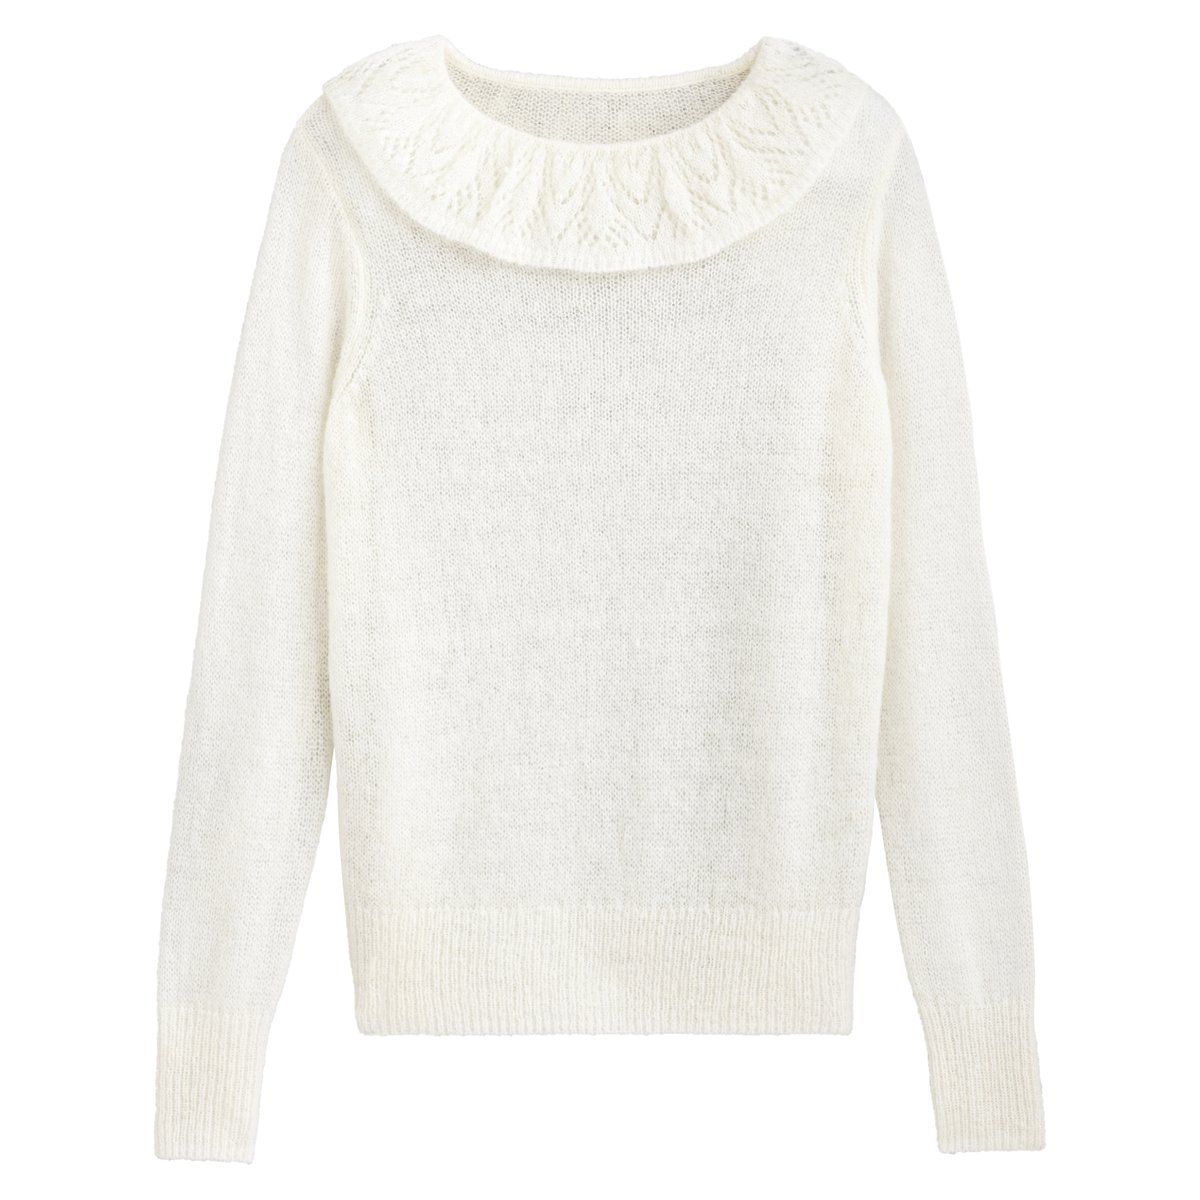 Пуловер La Redoute С круглым вырезом с воланом и длинными рукавами S белый, размер S - фото 5